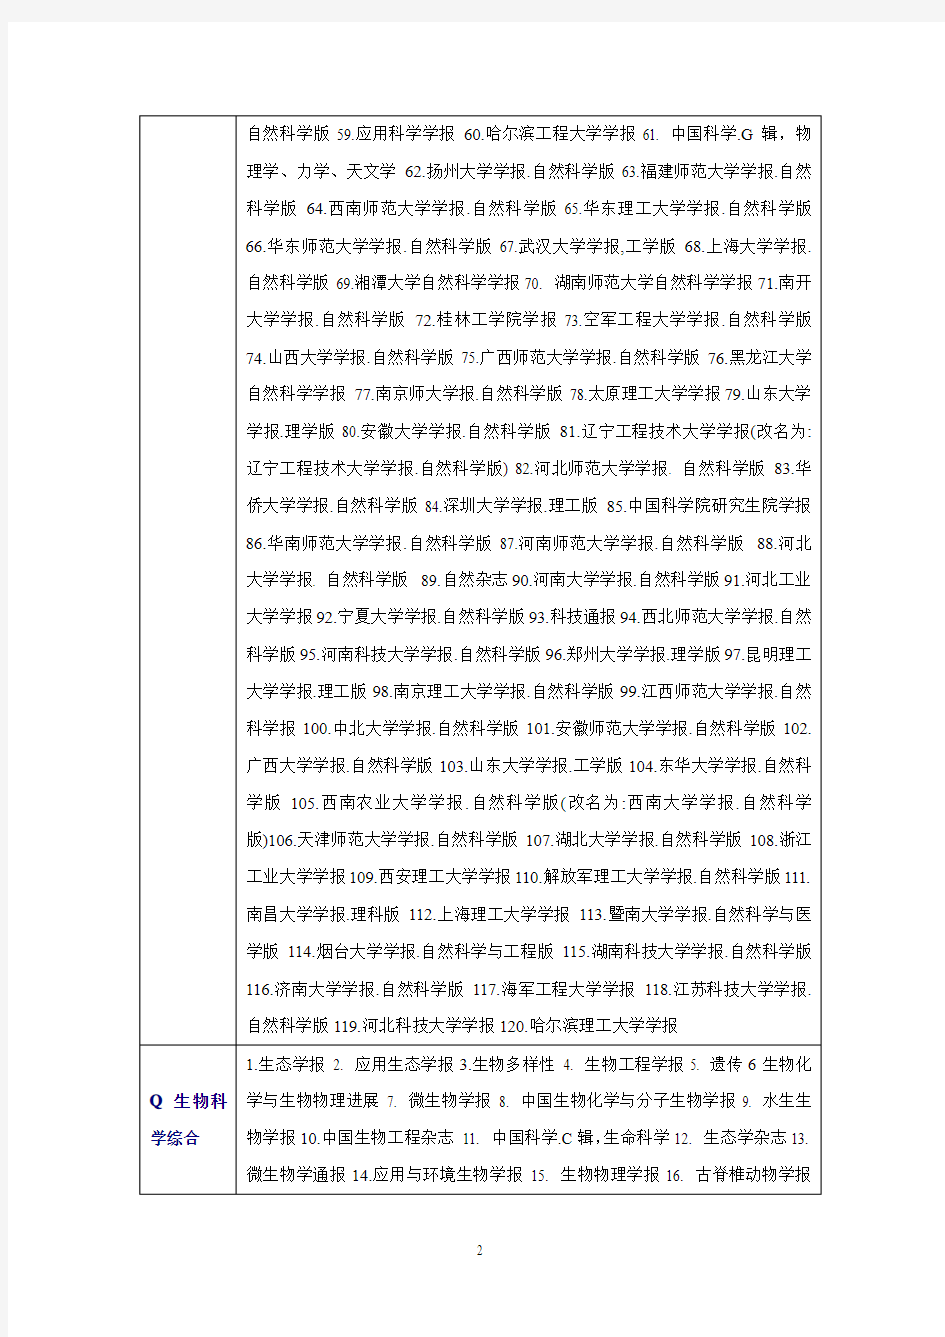 2011年版本,最新的《中文核心期刊目录》(发表研究论文投稿指南、评价学术论文的基本标准)